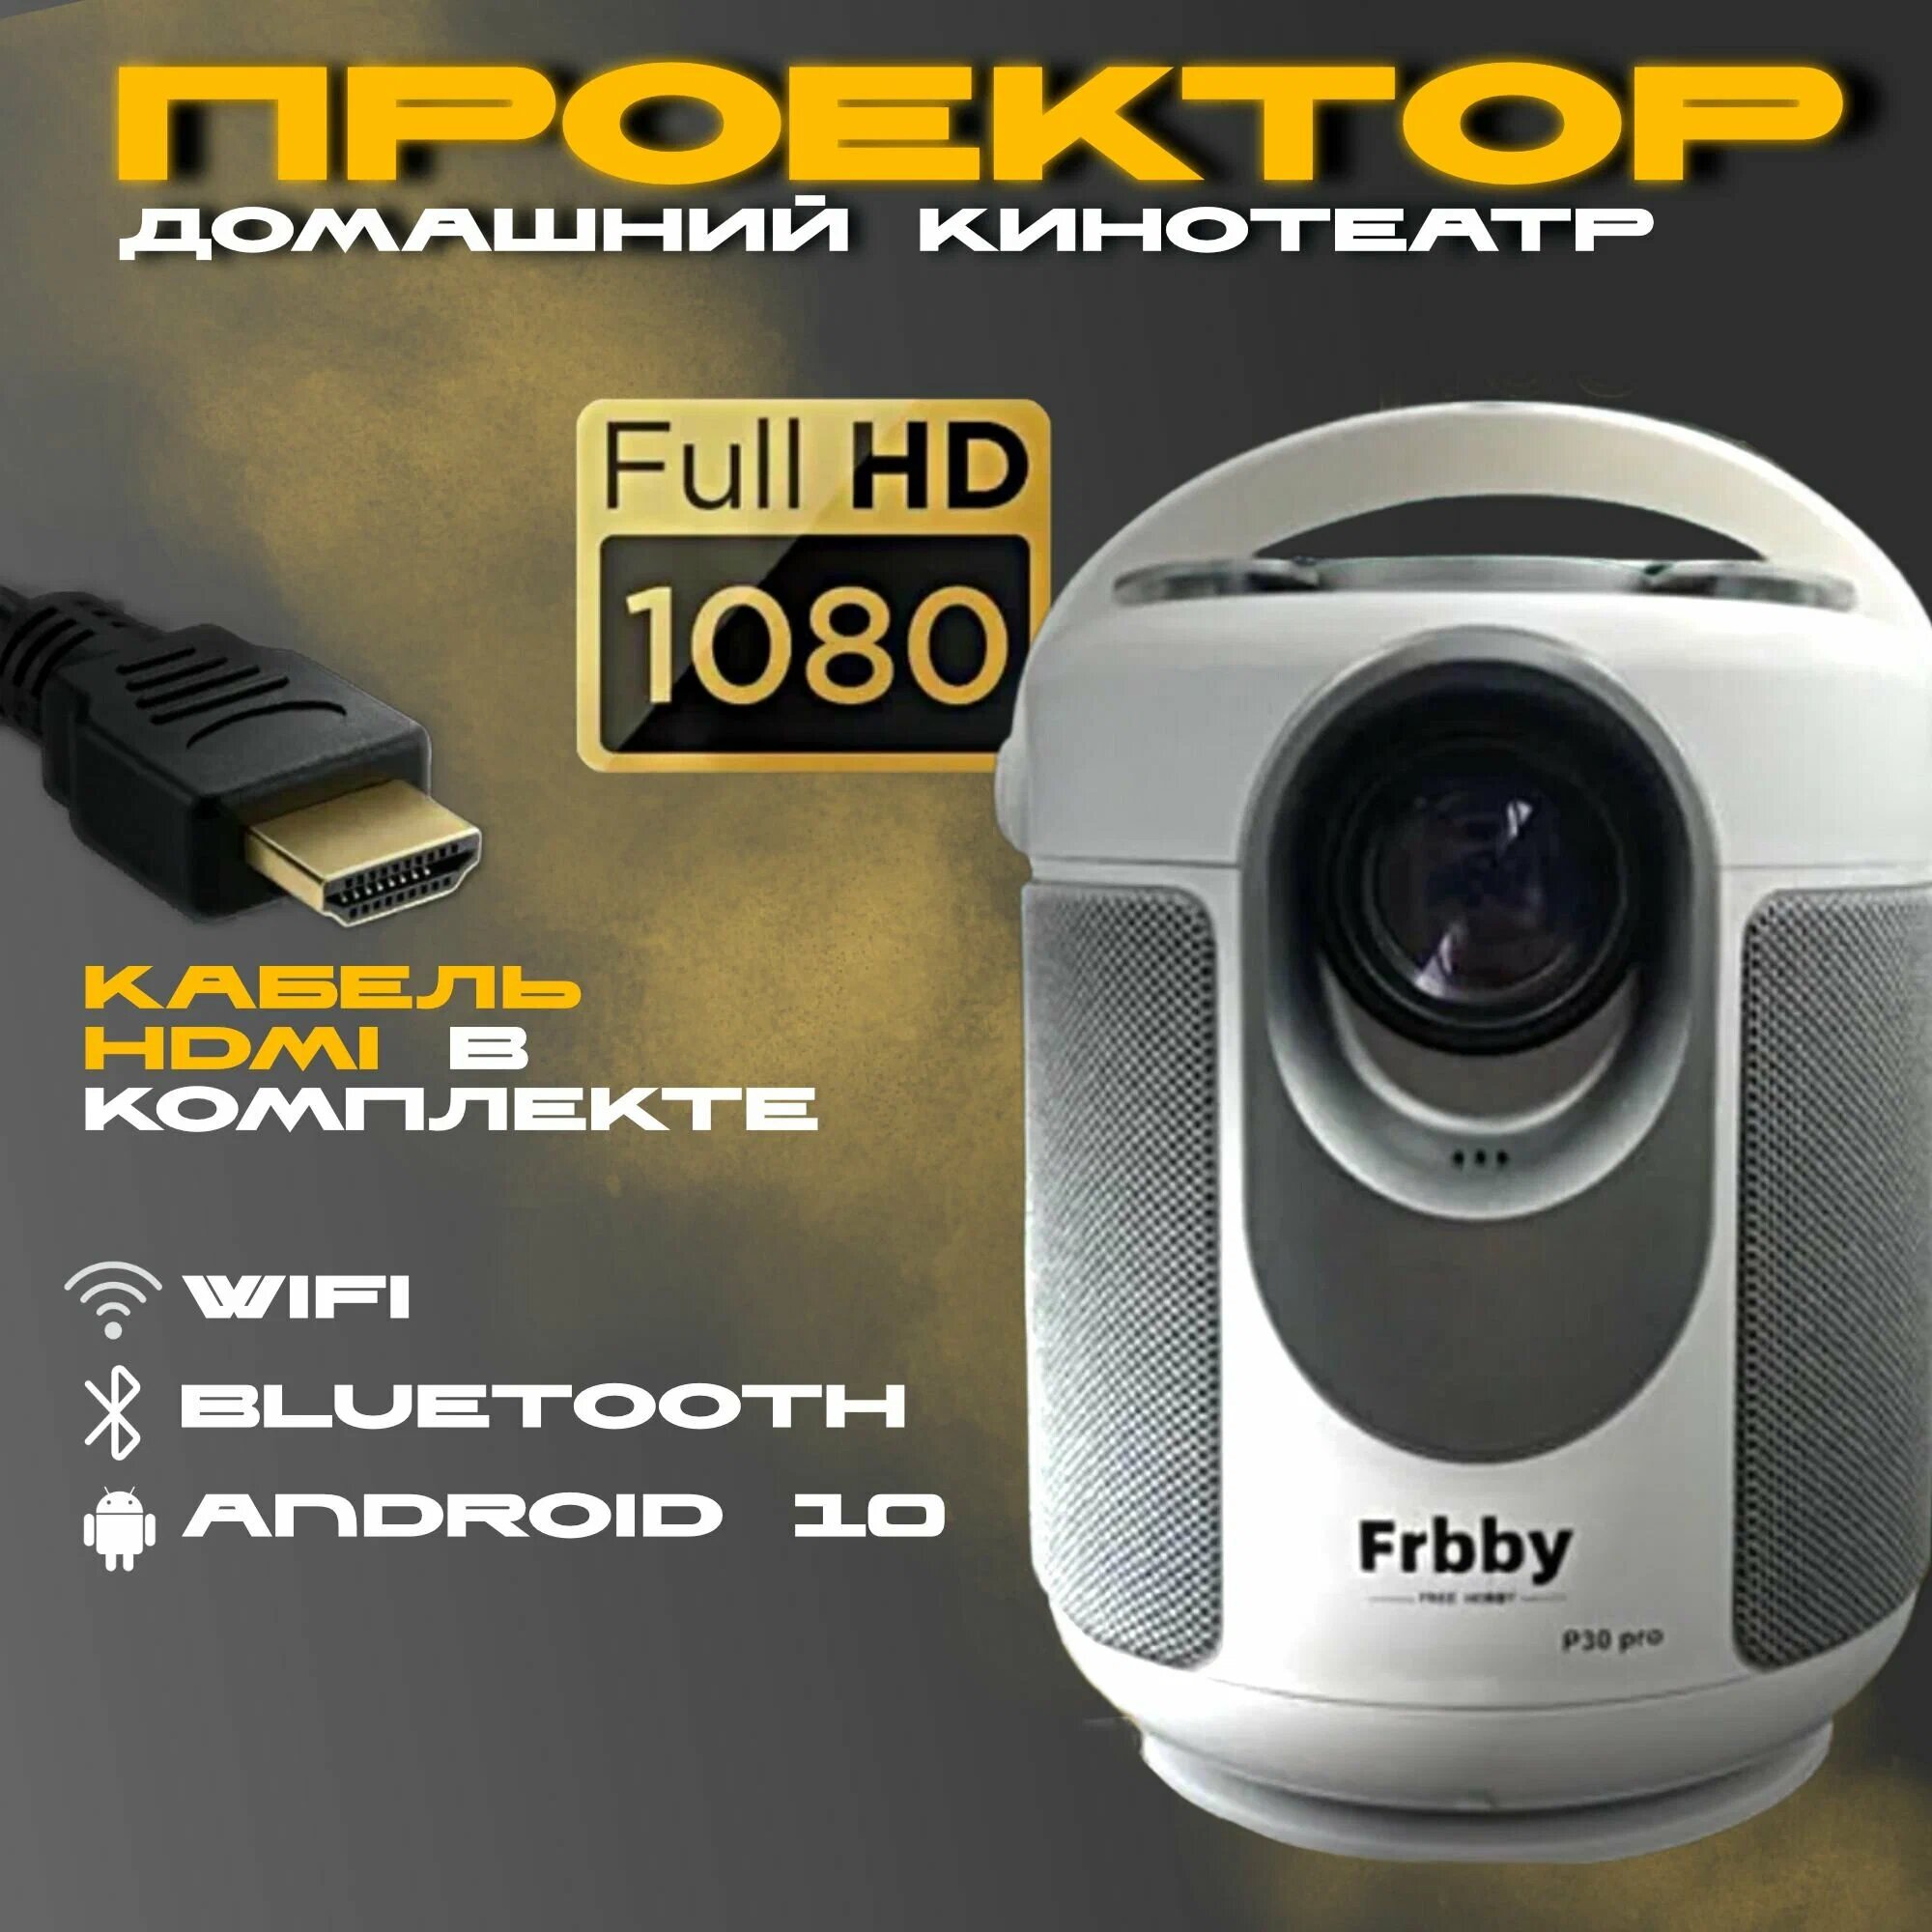 Проектор Frbby P30 PRO Full HD Android TV Портативный проектор 5G HDMI Проектор мультимедийный Wi-Fi 1080p